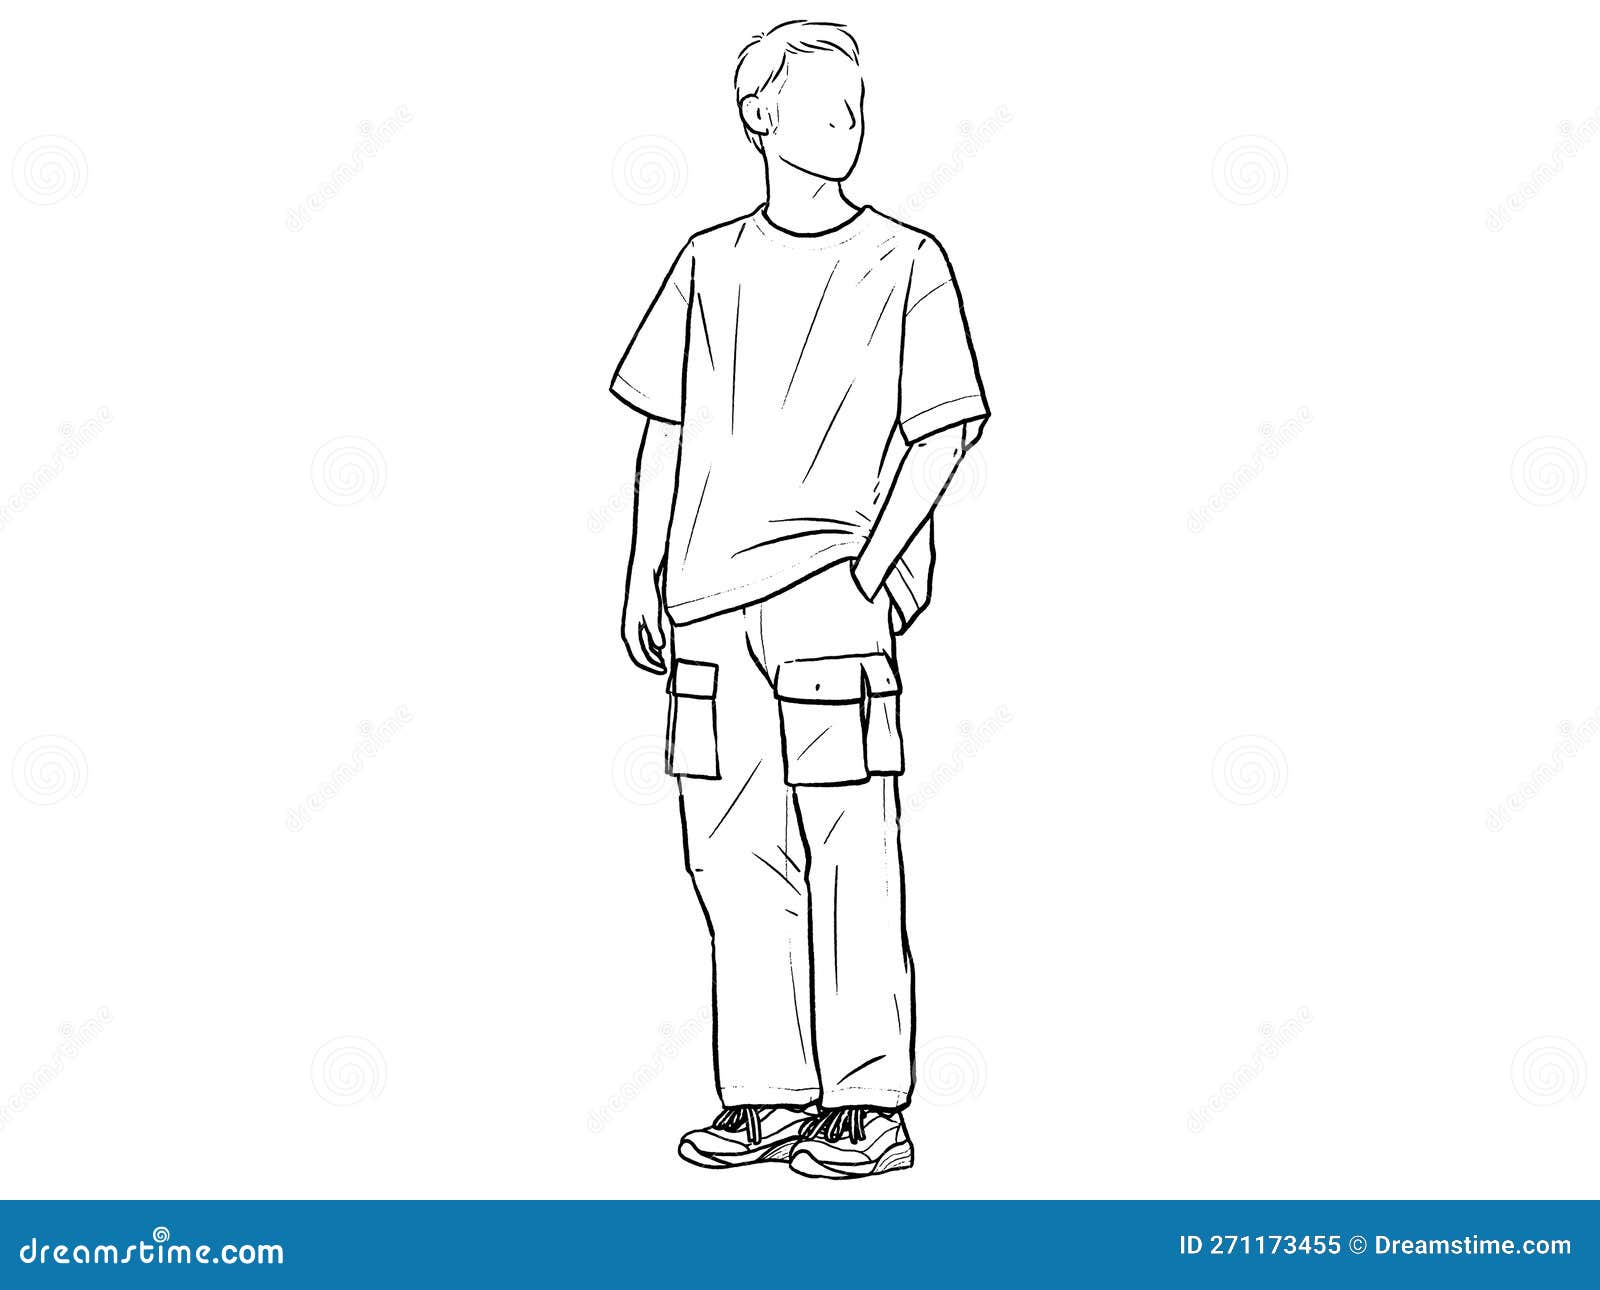 https://thumbs.dreamstime.com/z/homme-debout-avec-ses-mains-dans-son-pantalon-ligne-de-poche-dessin-vectoriel-illustration-contour-minimaliste-271173455.jpg